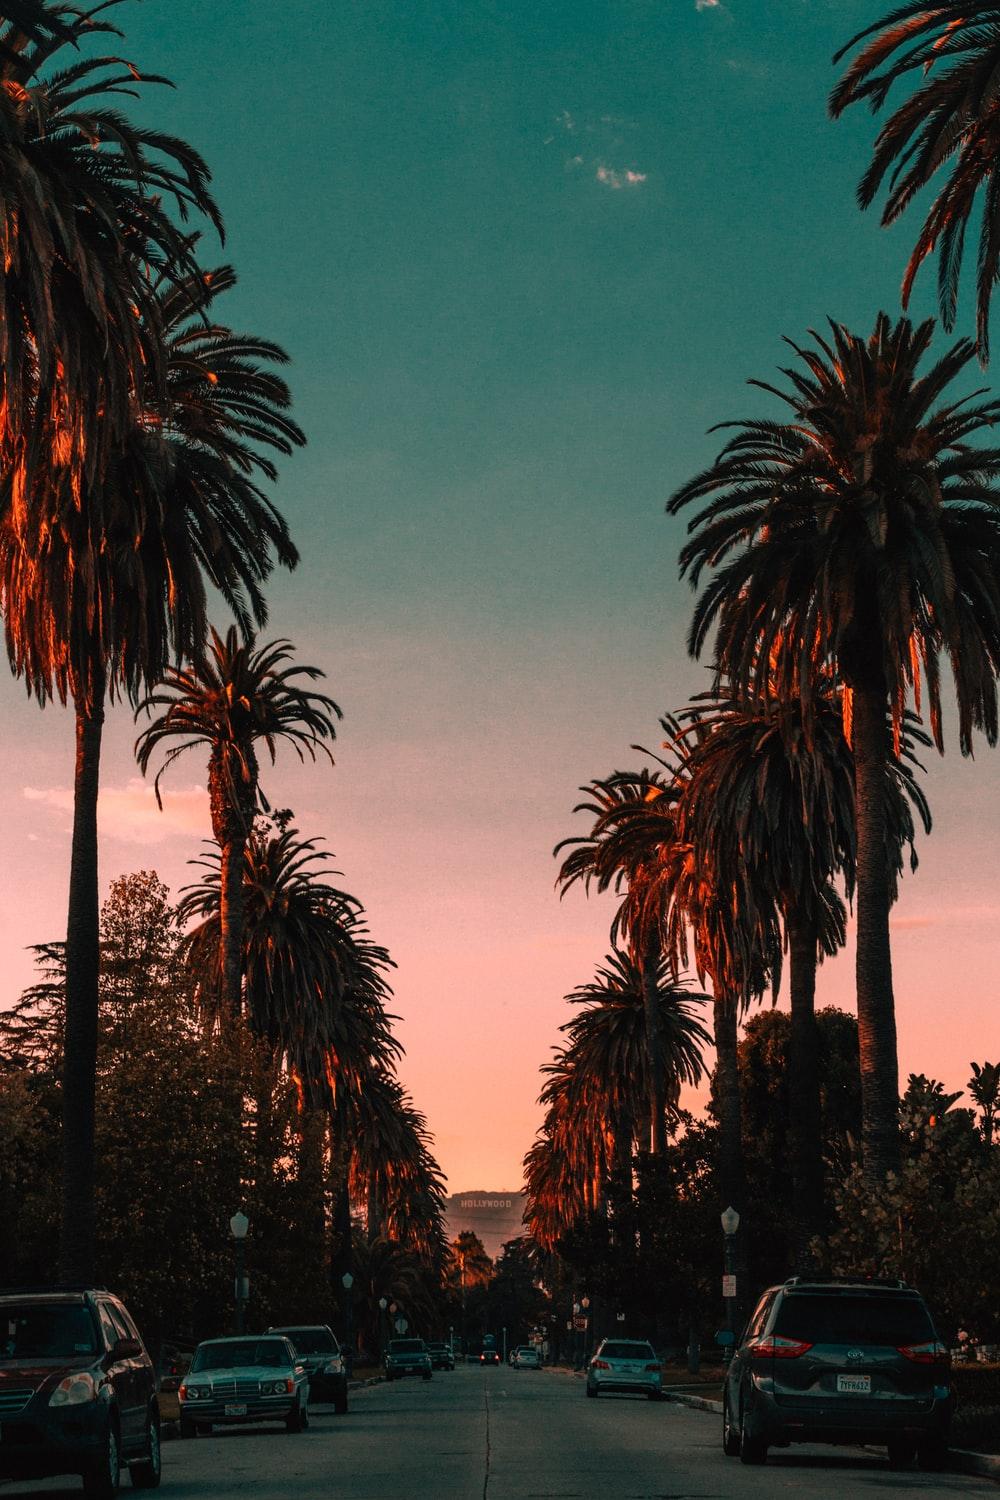 Hình nền Los Angeles thật đẹp và phong cách sẽ khiến bạn nhớ mãi đến chuyến du lịch tuyệt vời của mình. Hãy cùng tạo một không gian máy tính thú vị và độc đáo của riêng bạn với những tác phẩm nghệ thuật đầy màu sắc và tinh tế này.